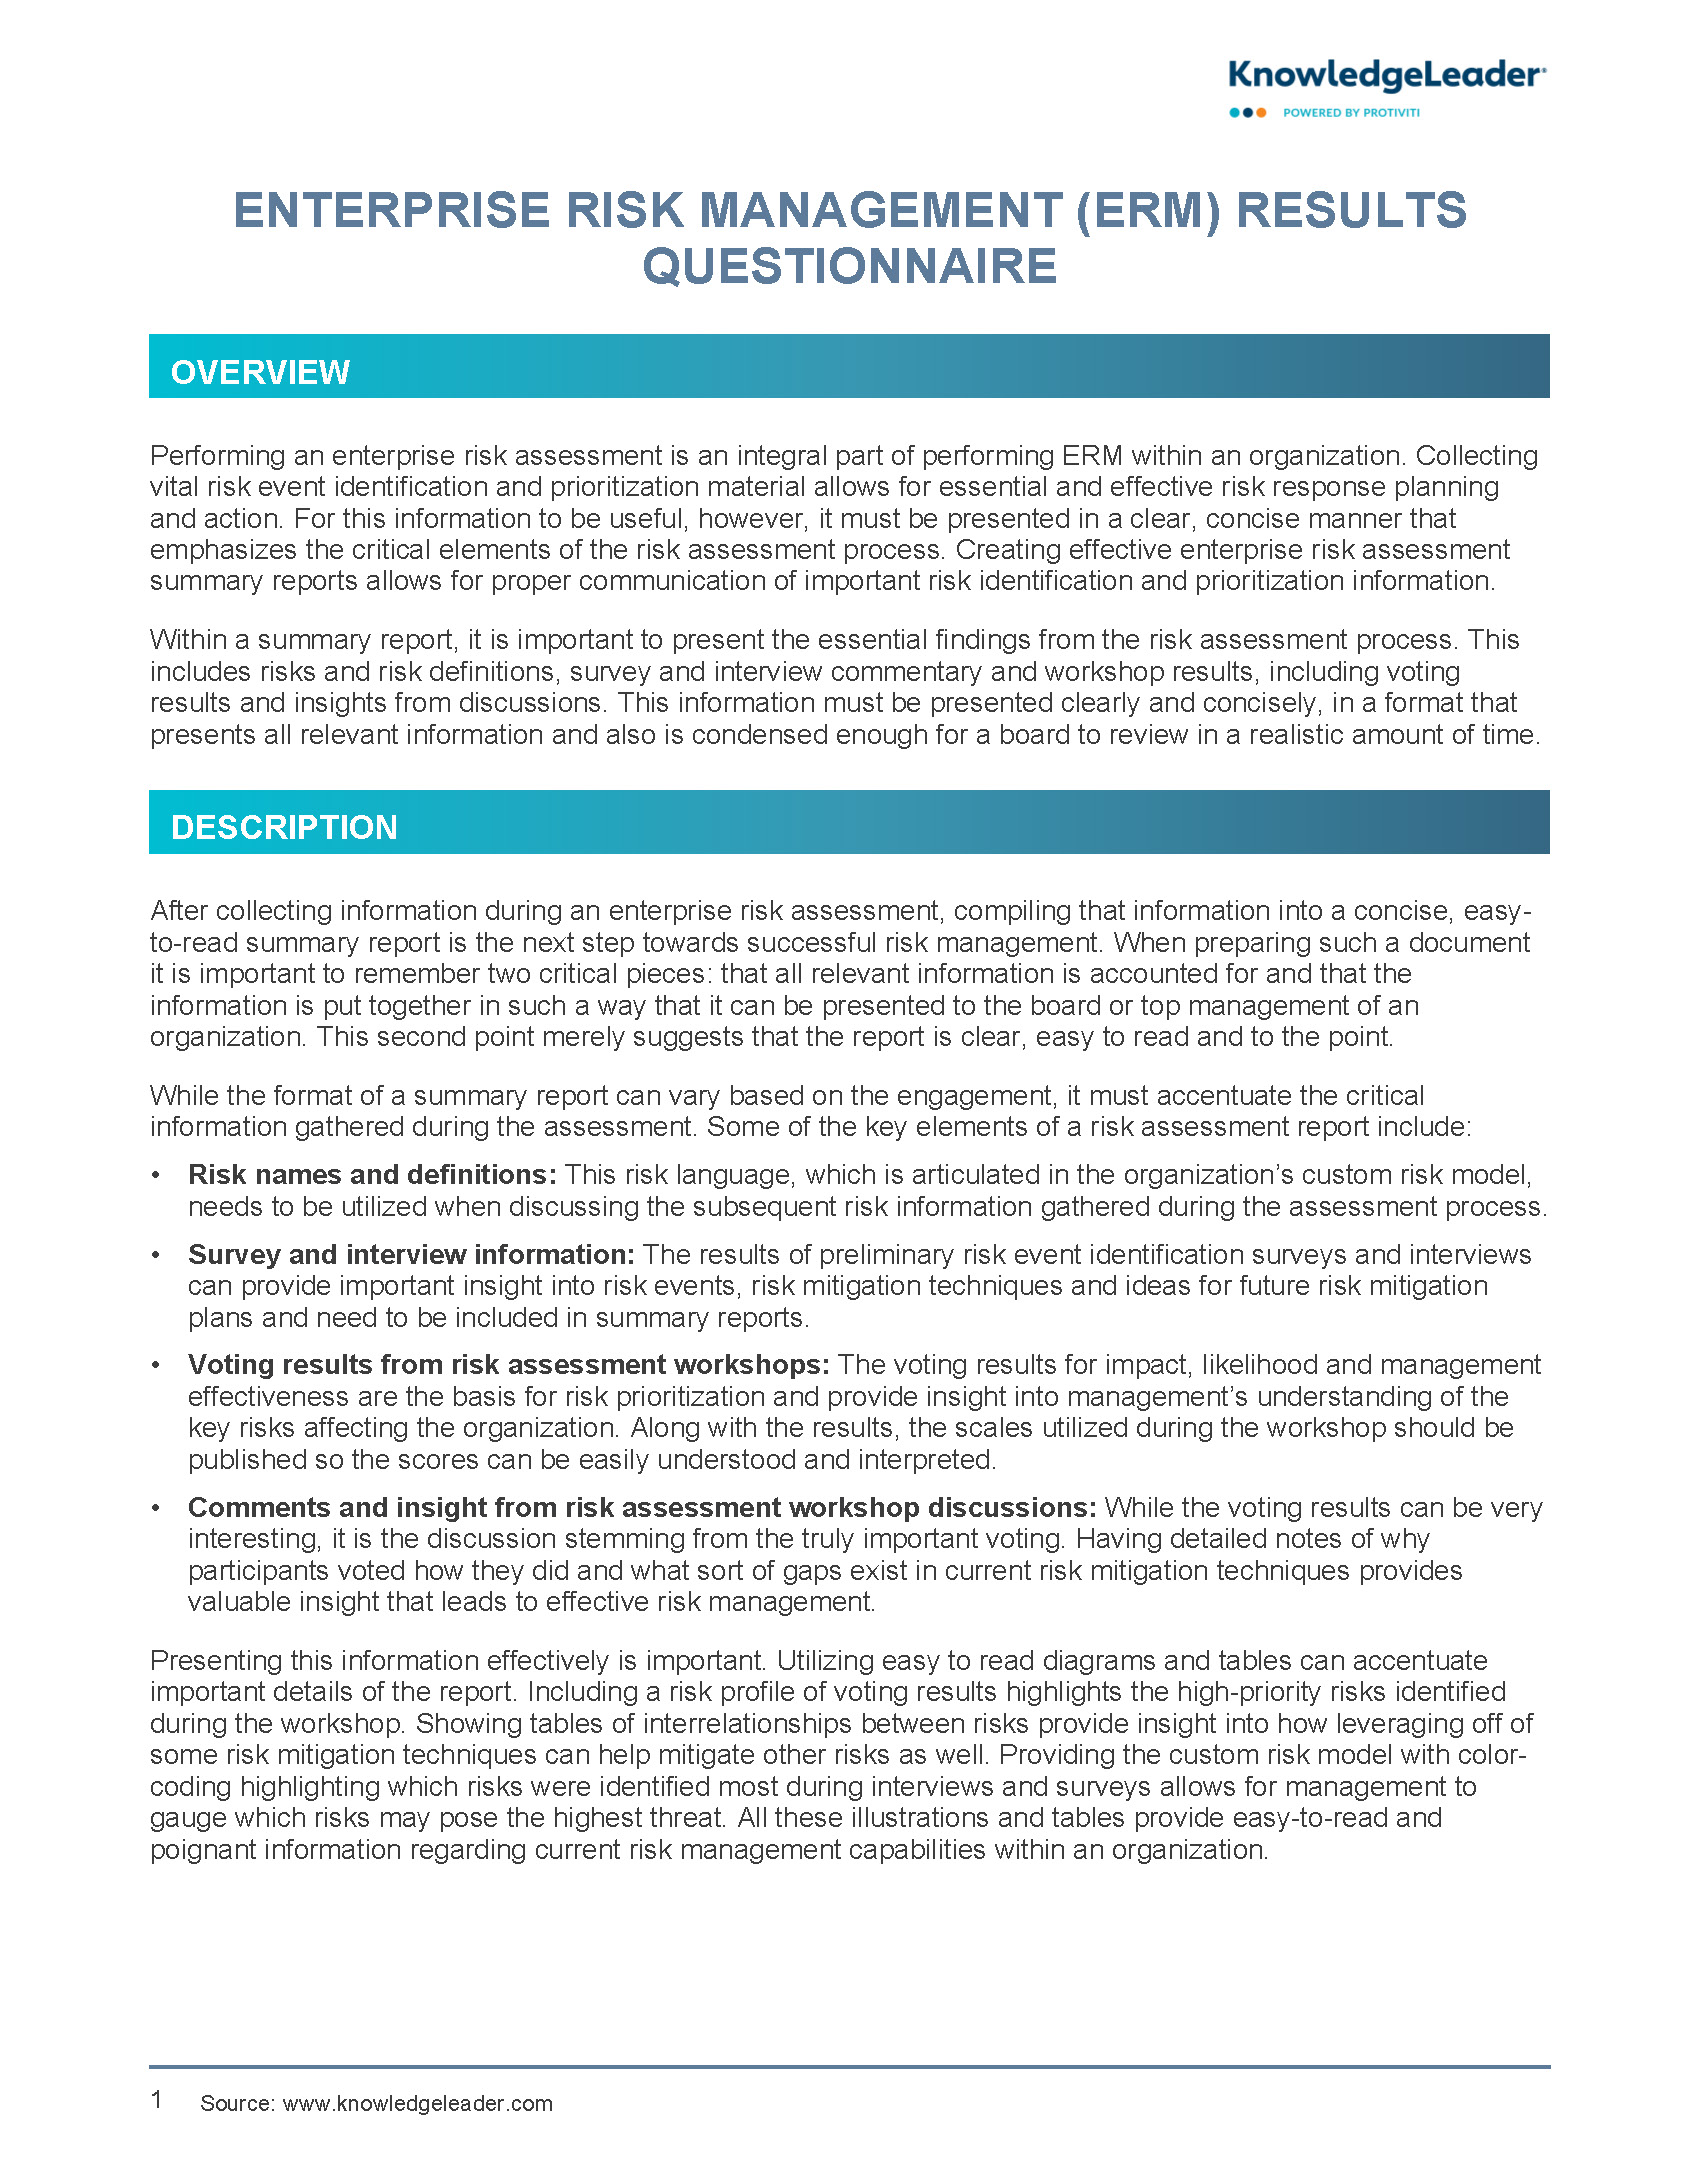 Enterprise Risk Management (ERM) Results Questionnaire